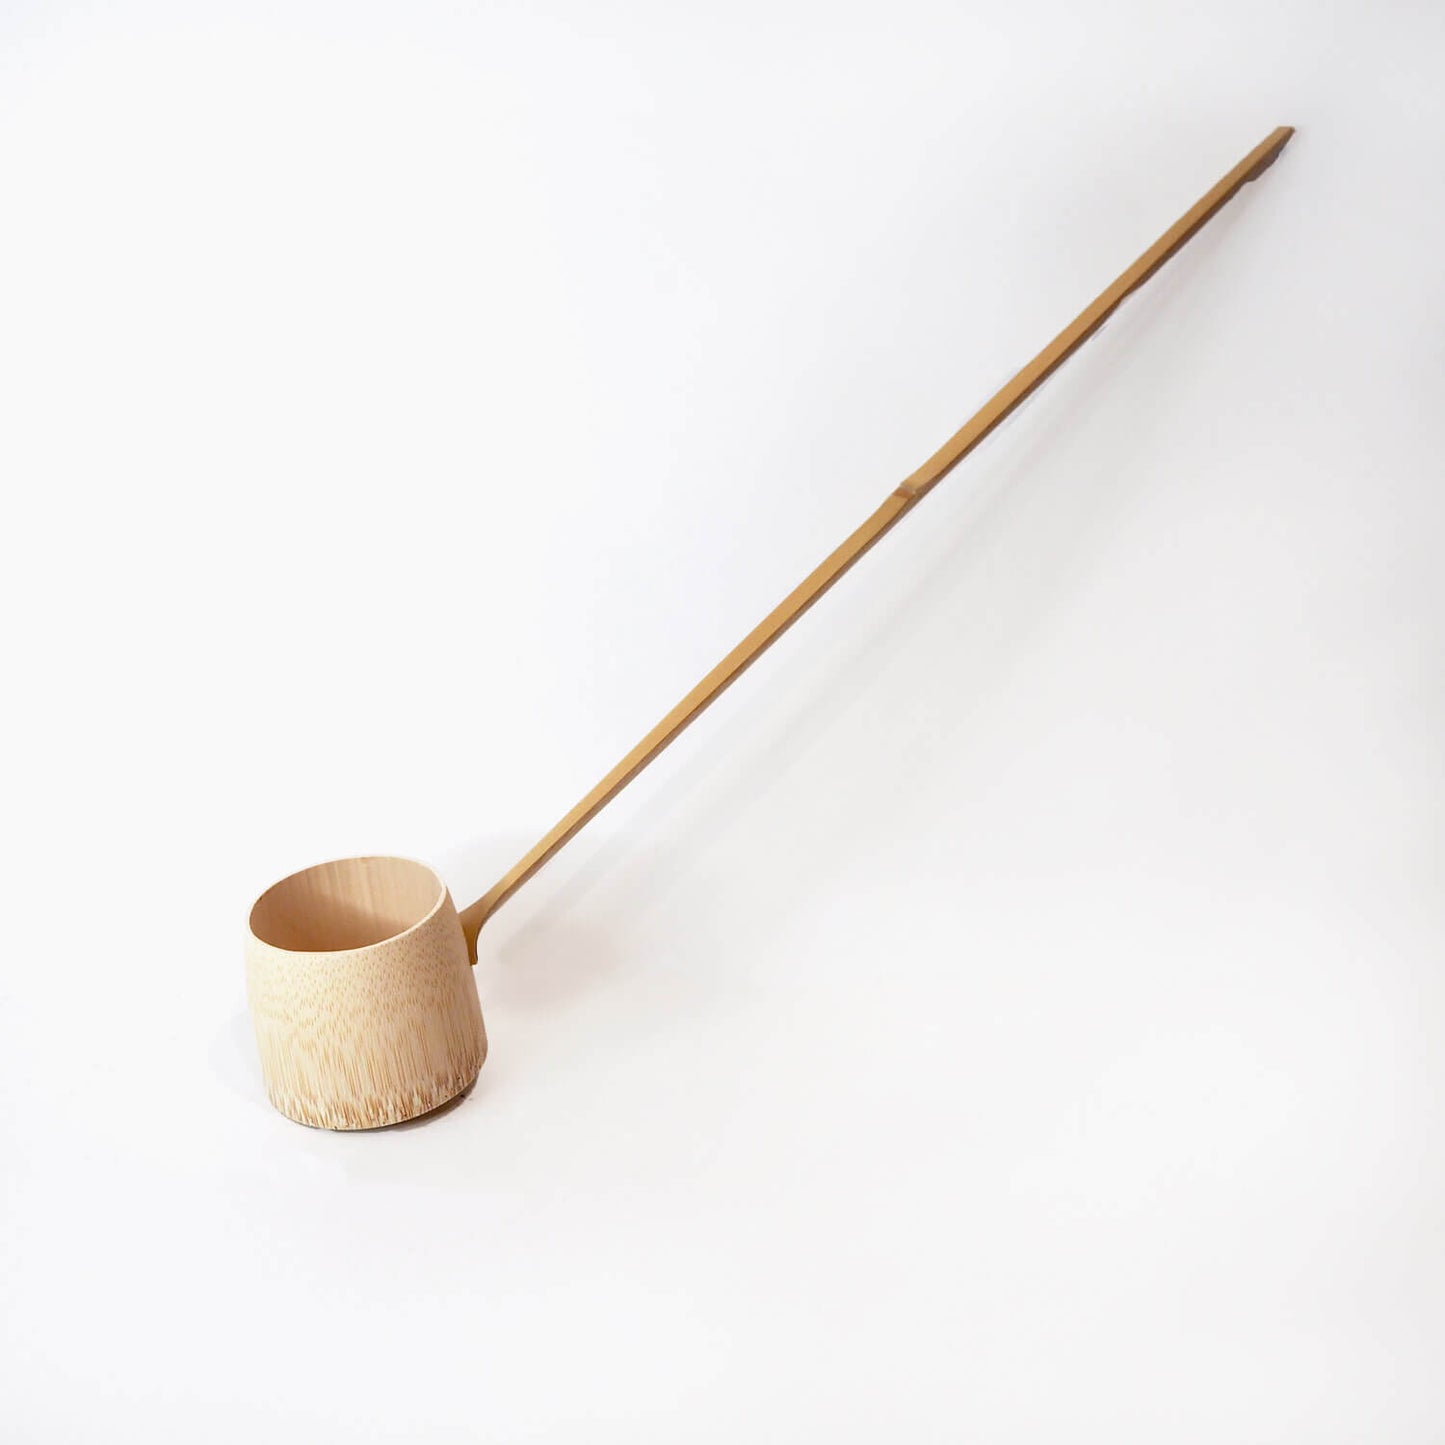 Hishaku (Bamboo Ladle)